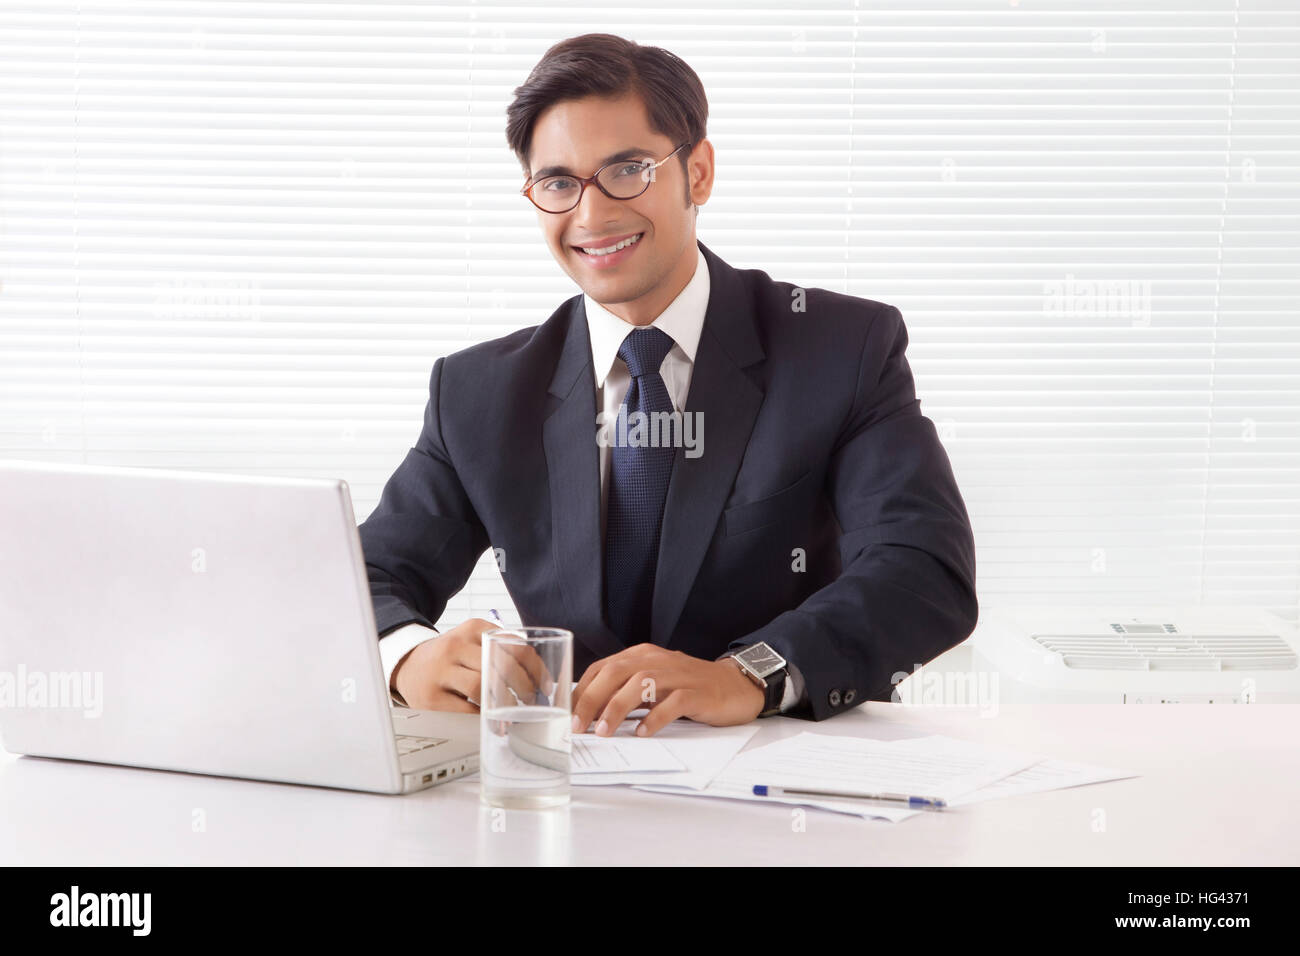 Les jeunes professionnels et souriant homme professionnel en bureau avec ordinateur portable sur la table Banque D'Images